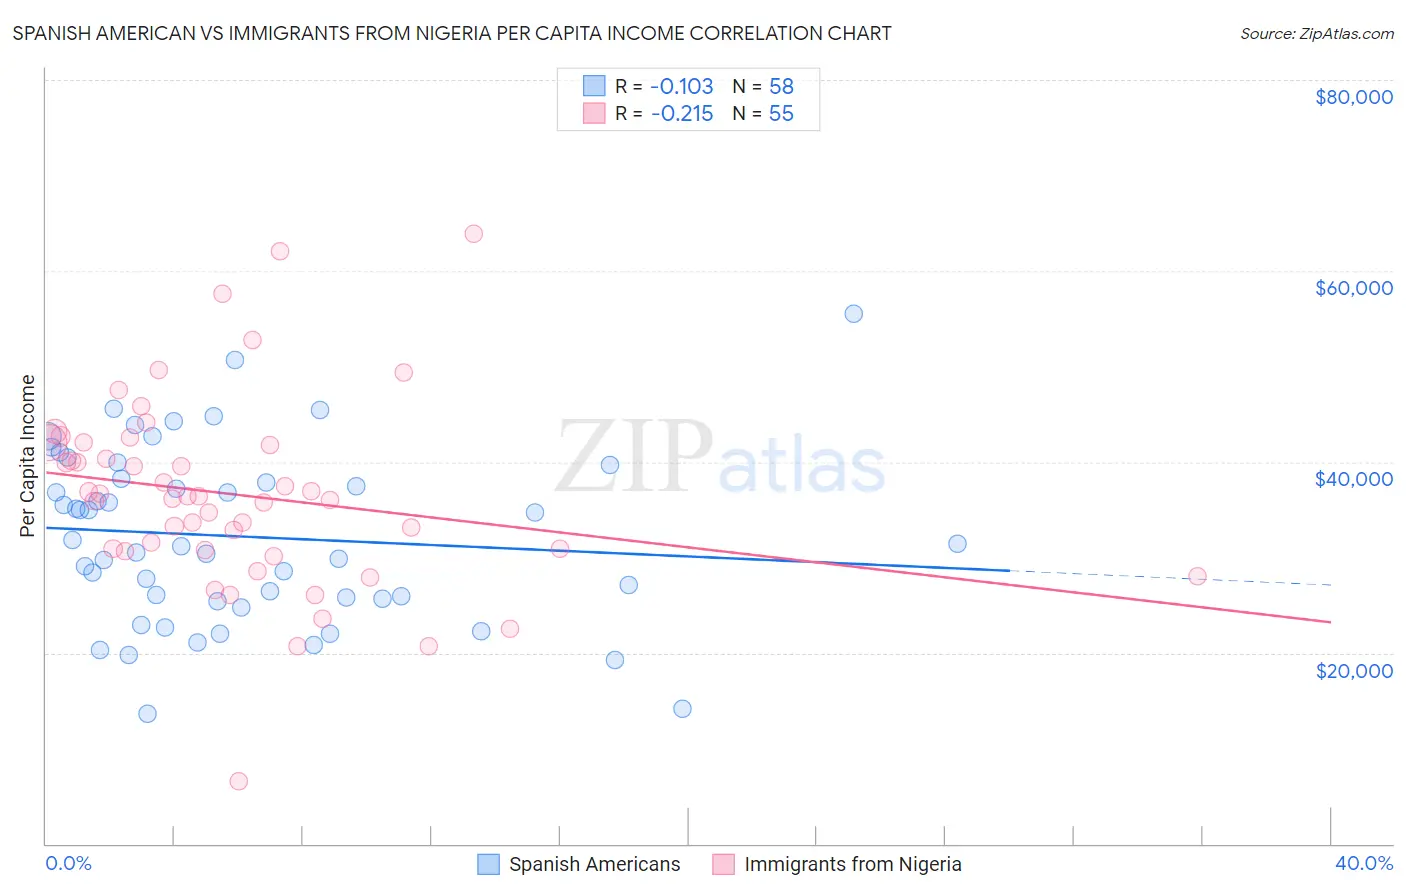 Spanish American vs Immigrants from Nigeria Per Capita Income